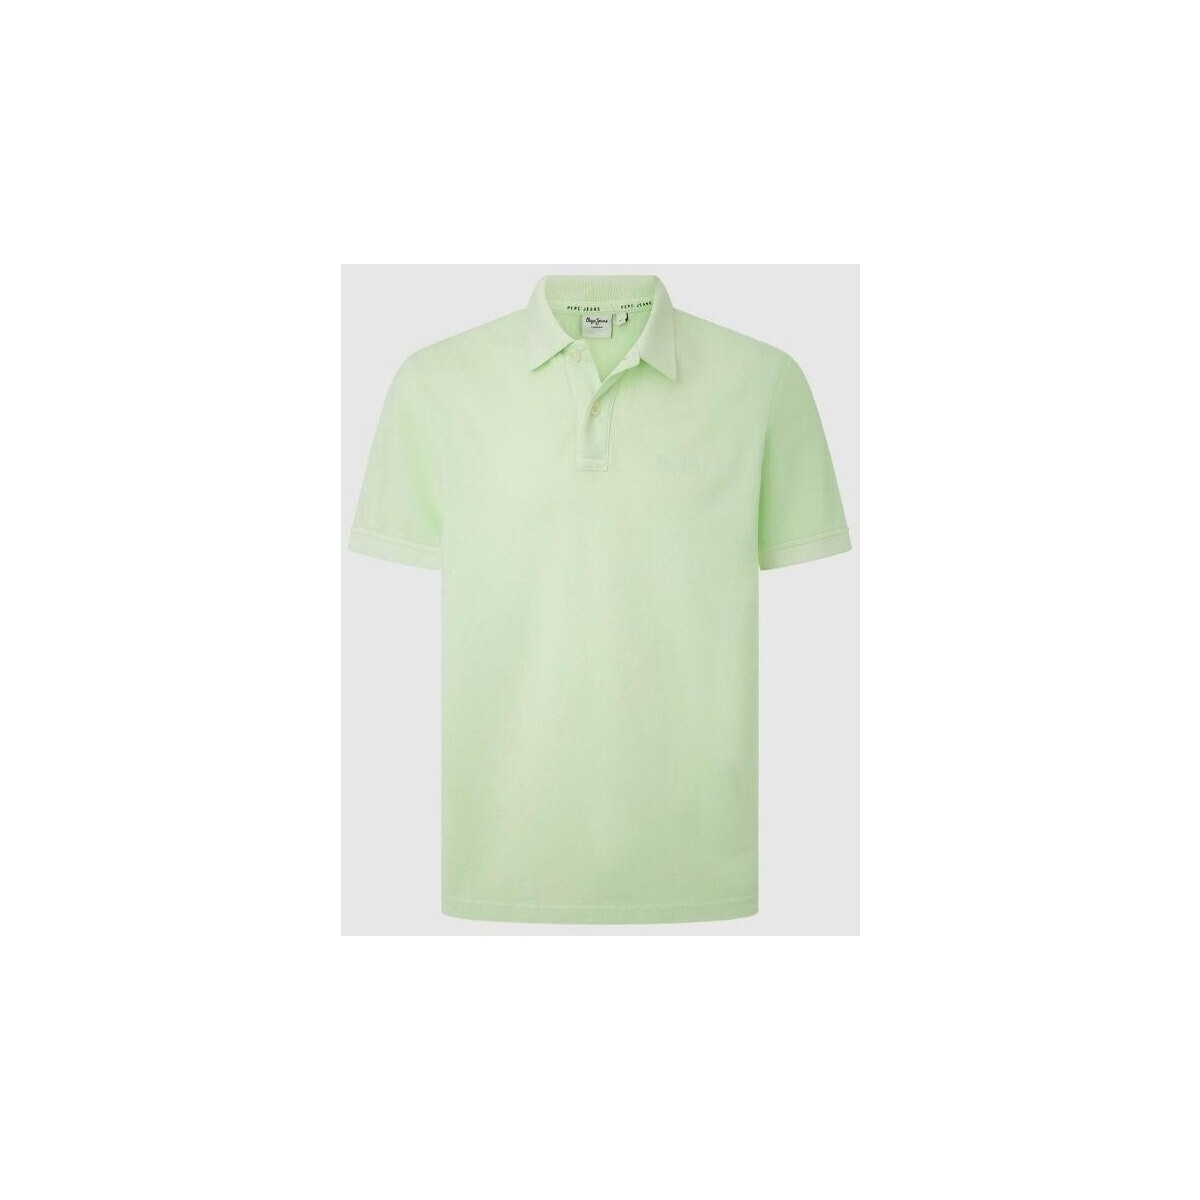 Textil Muži Trička s krátkým rukávem Pepe jeans PM542099 NEW OLIVER GD Zelená